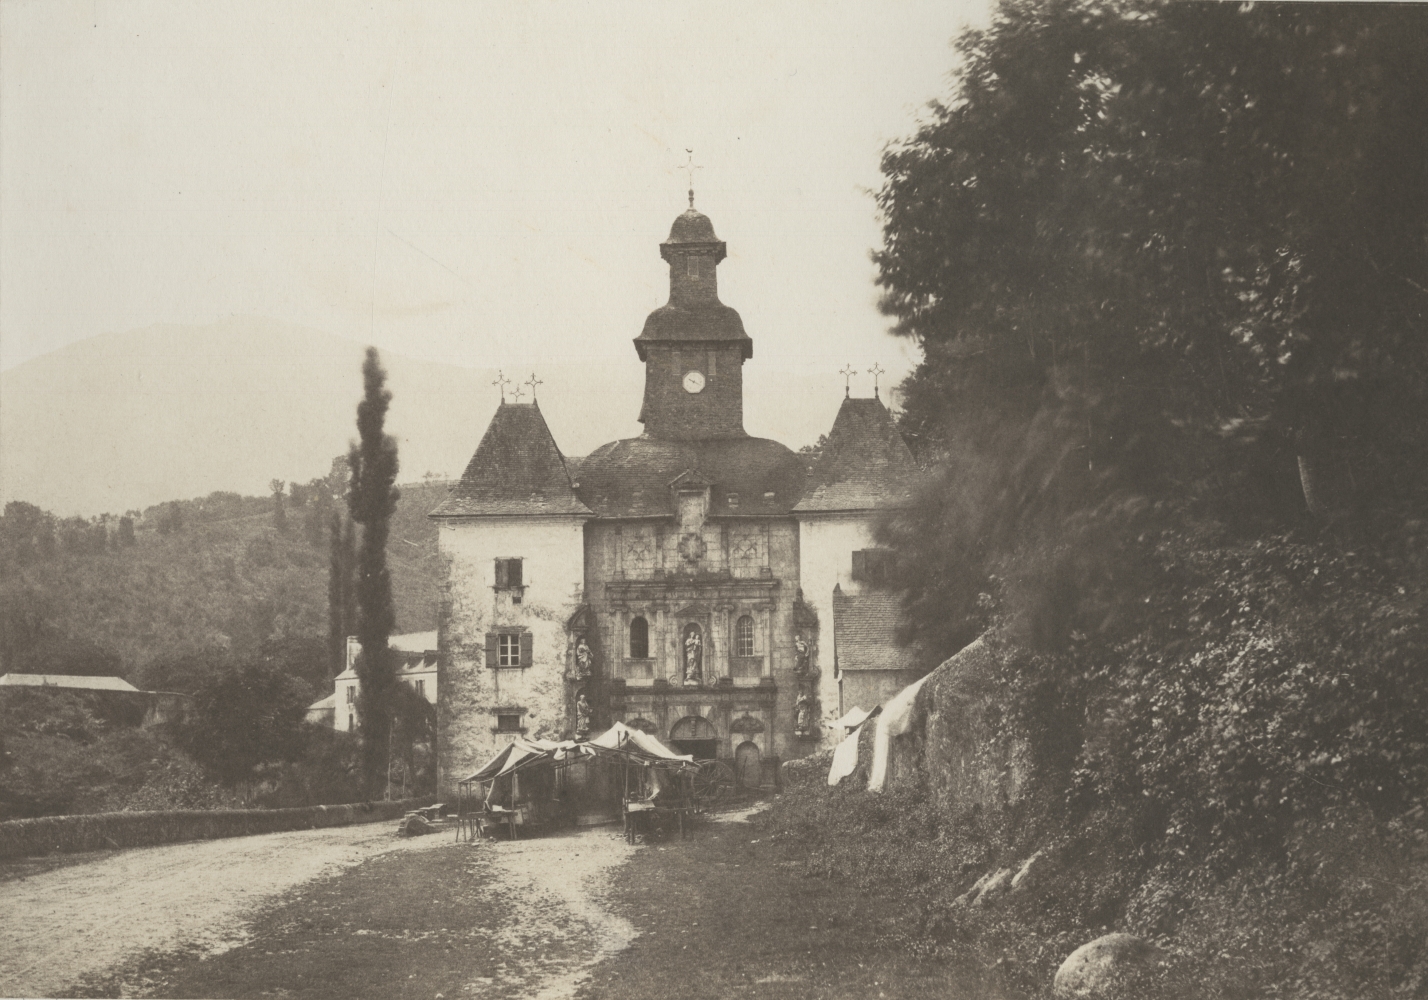 Joseph vicomte VIGIER (French, 1821-1894) "Lestelle. Notre-Dame de Bétharam. (Route d'Argelès à Pau)"*, 1853 Salt print from a paper negative 22.4 x 31.8 cm